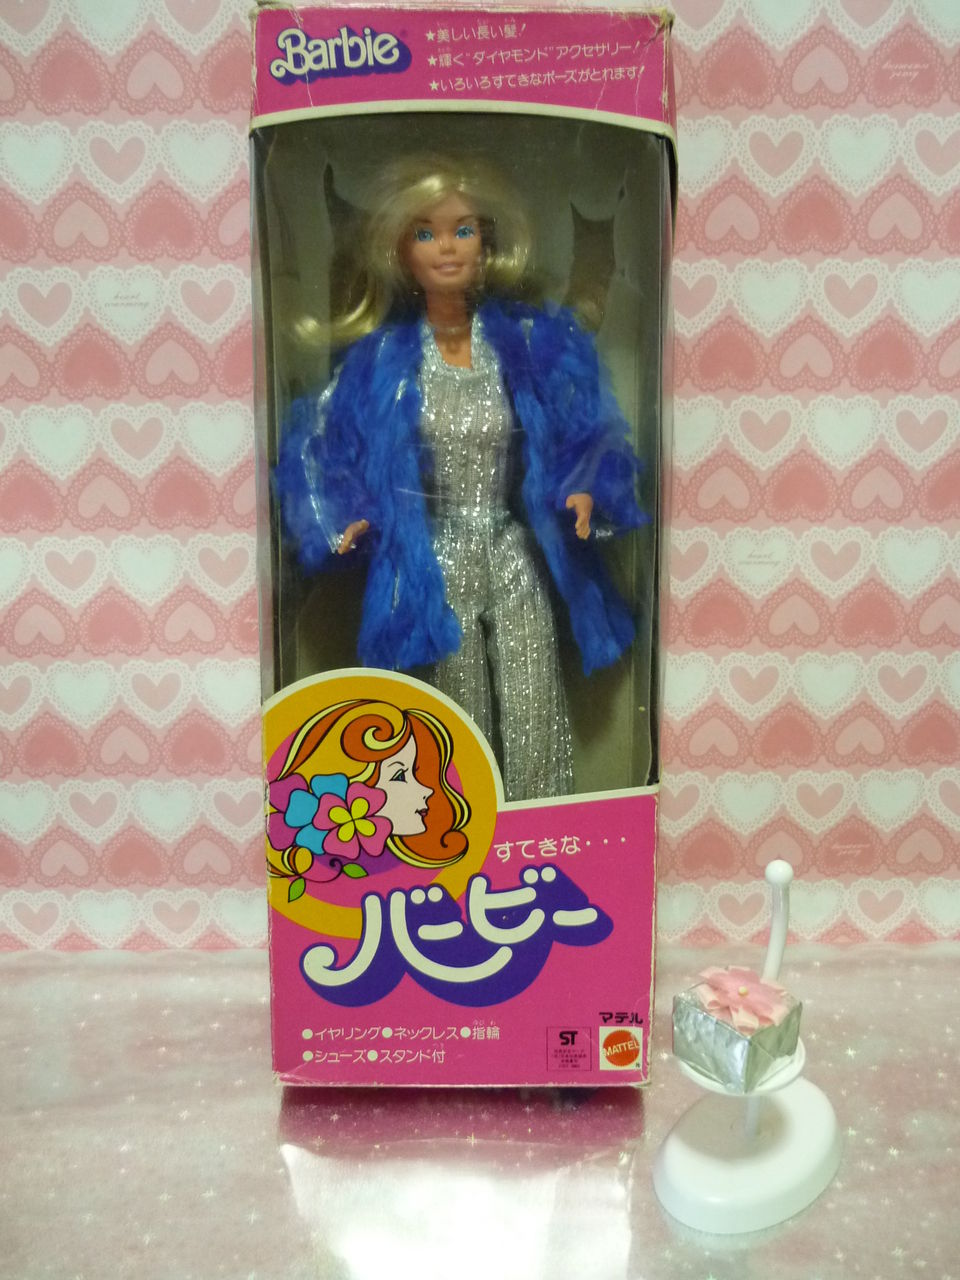 すてきなバービー「スーパースター・バービーSuperstar Barbie